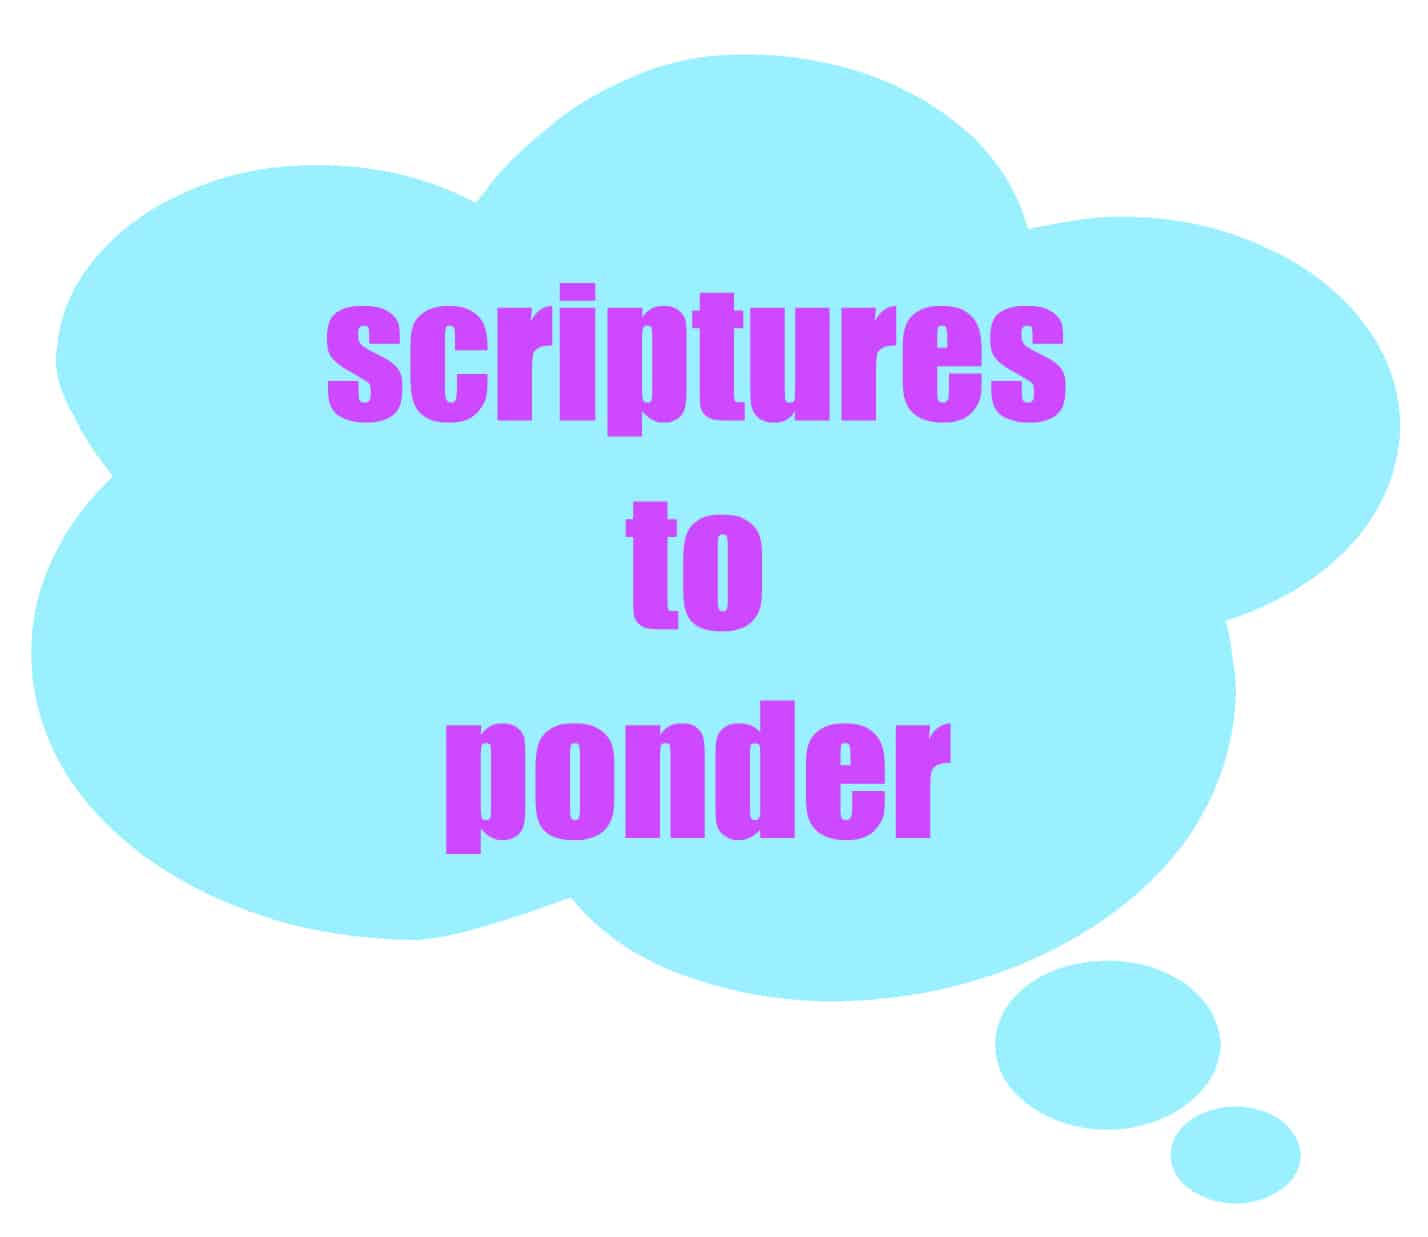 scriptures to ponder